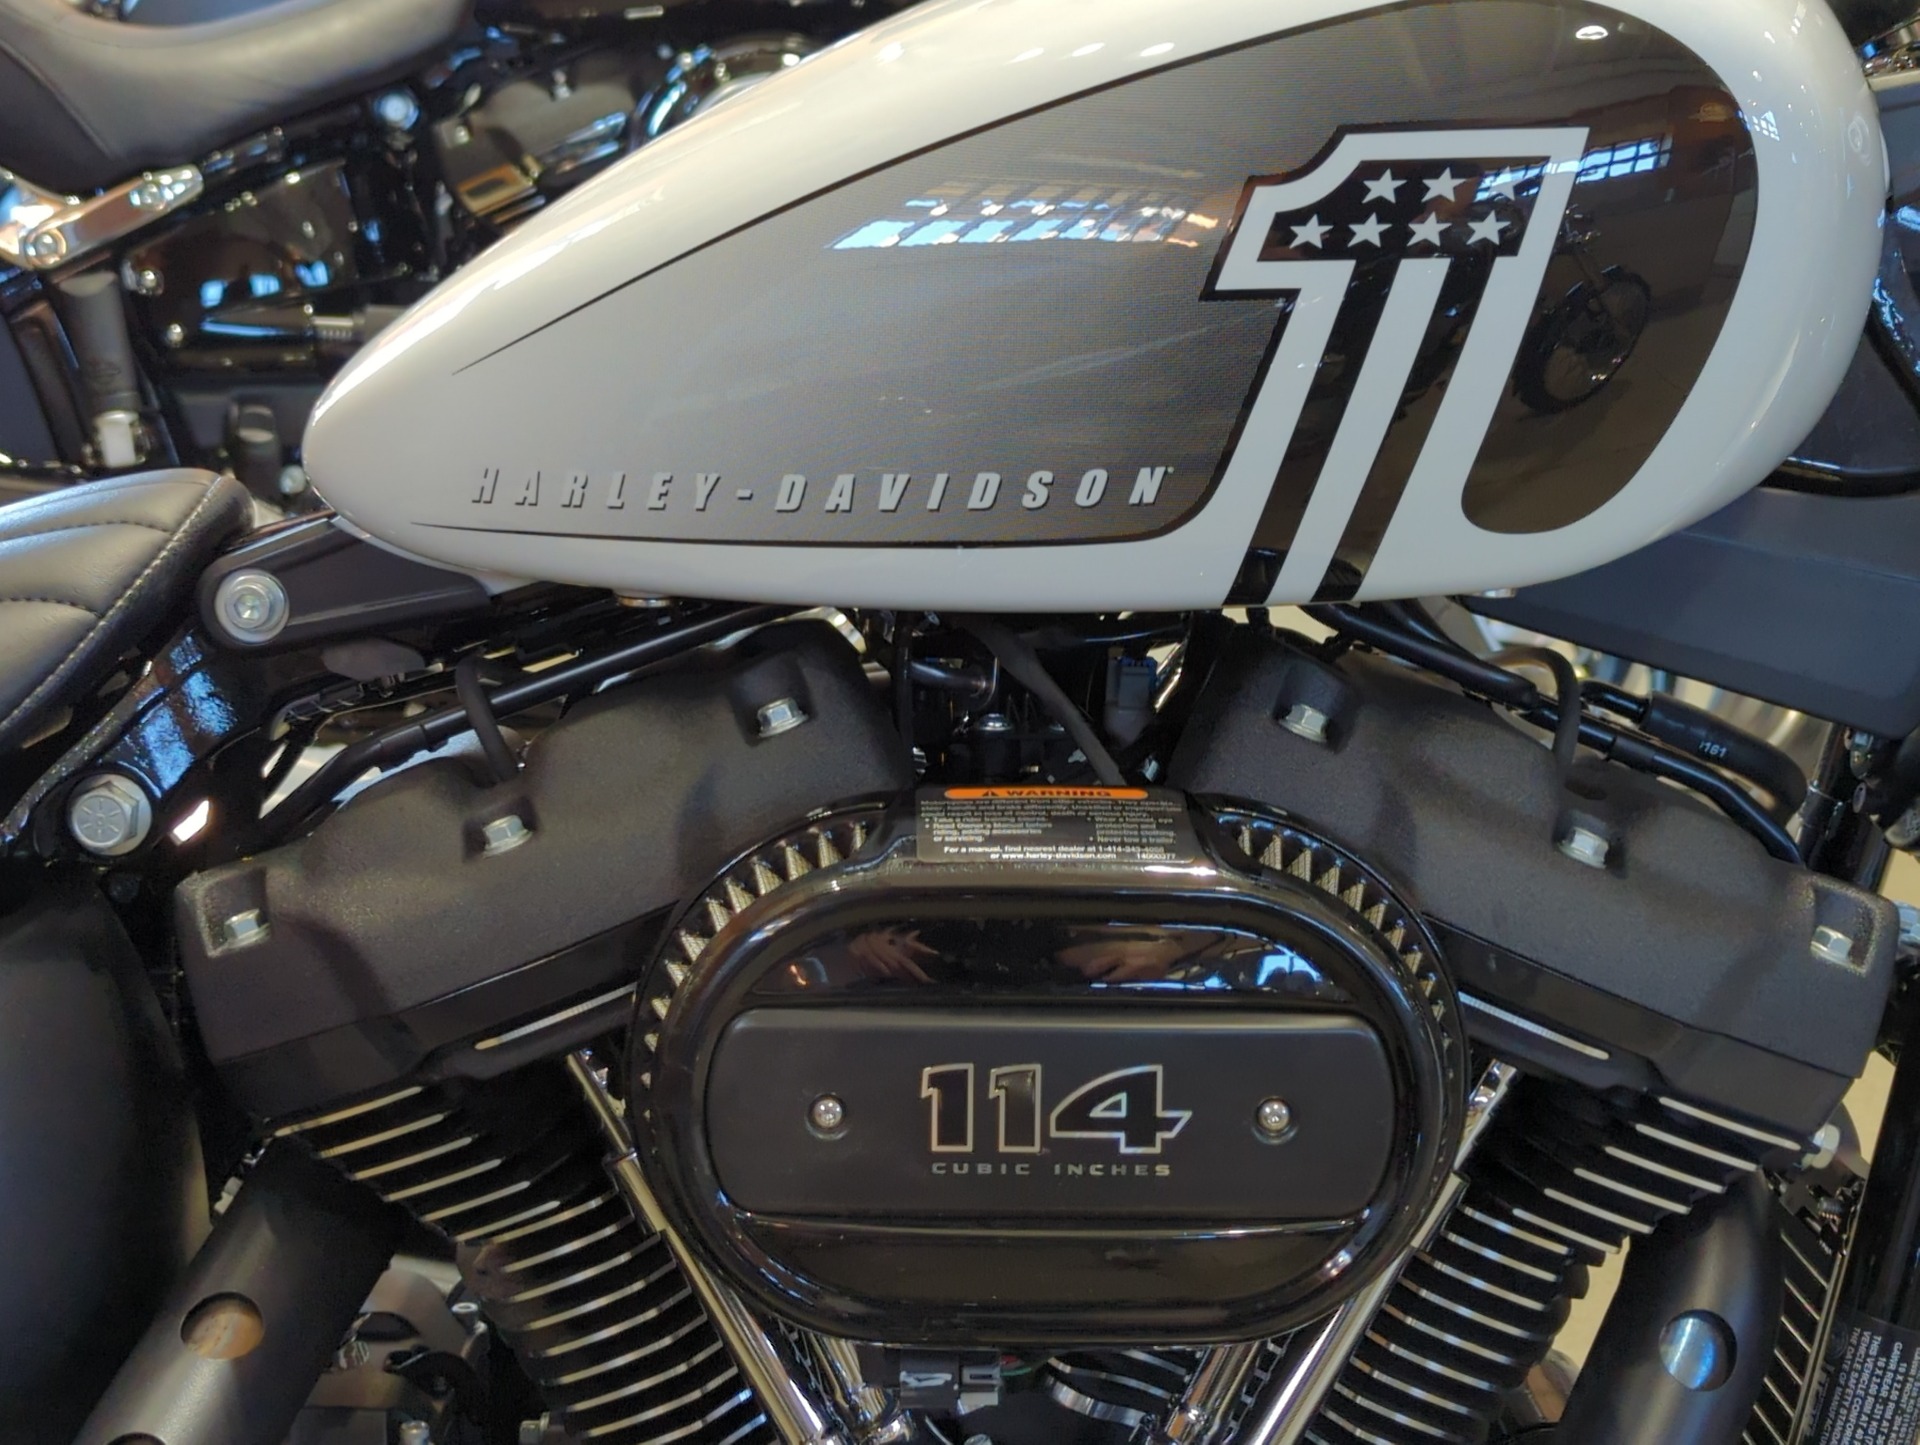 2021 Harley-Davidson Street Bob® 114 in Broadalbin, New York - Photo 3